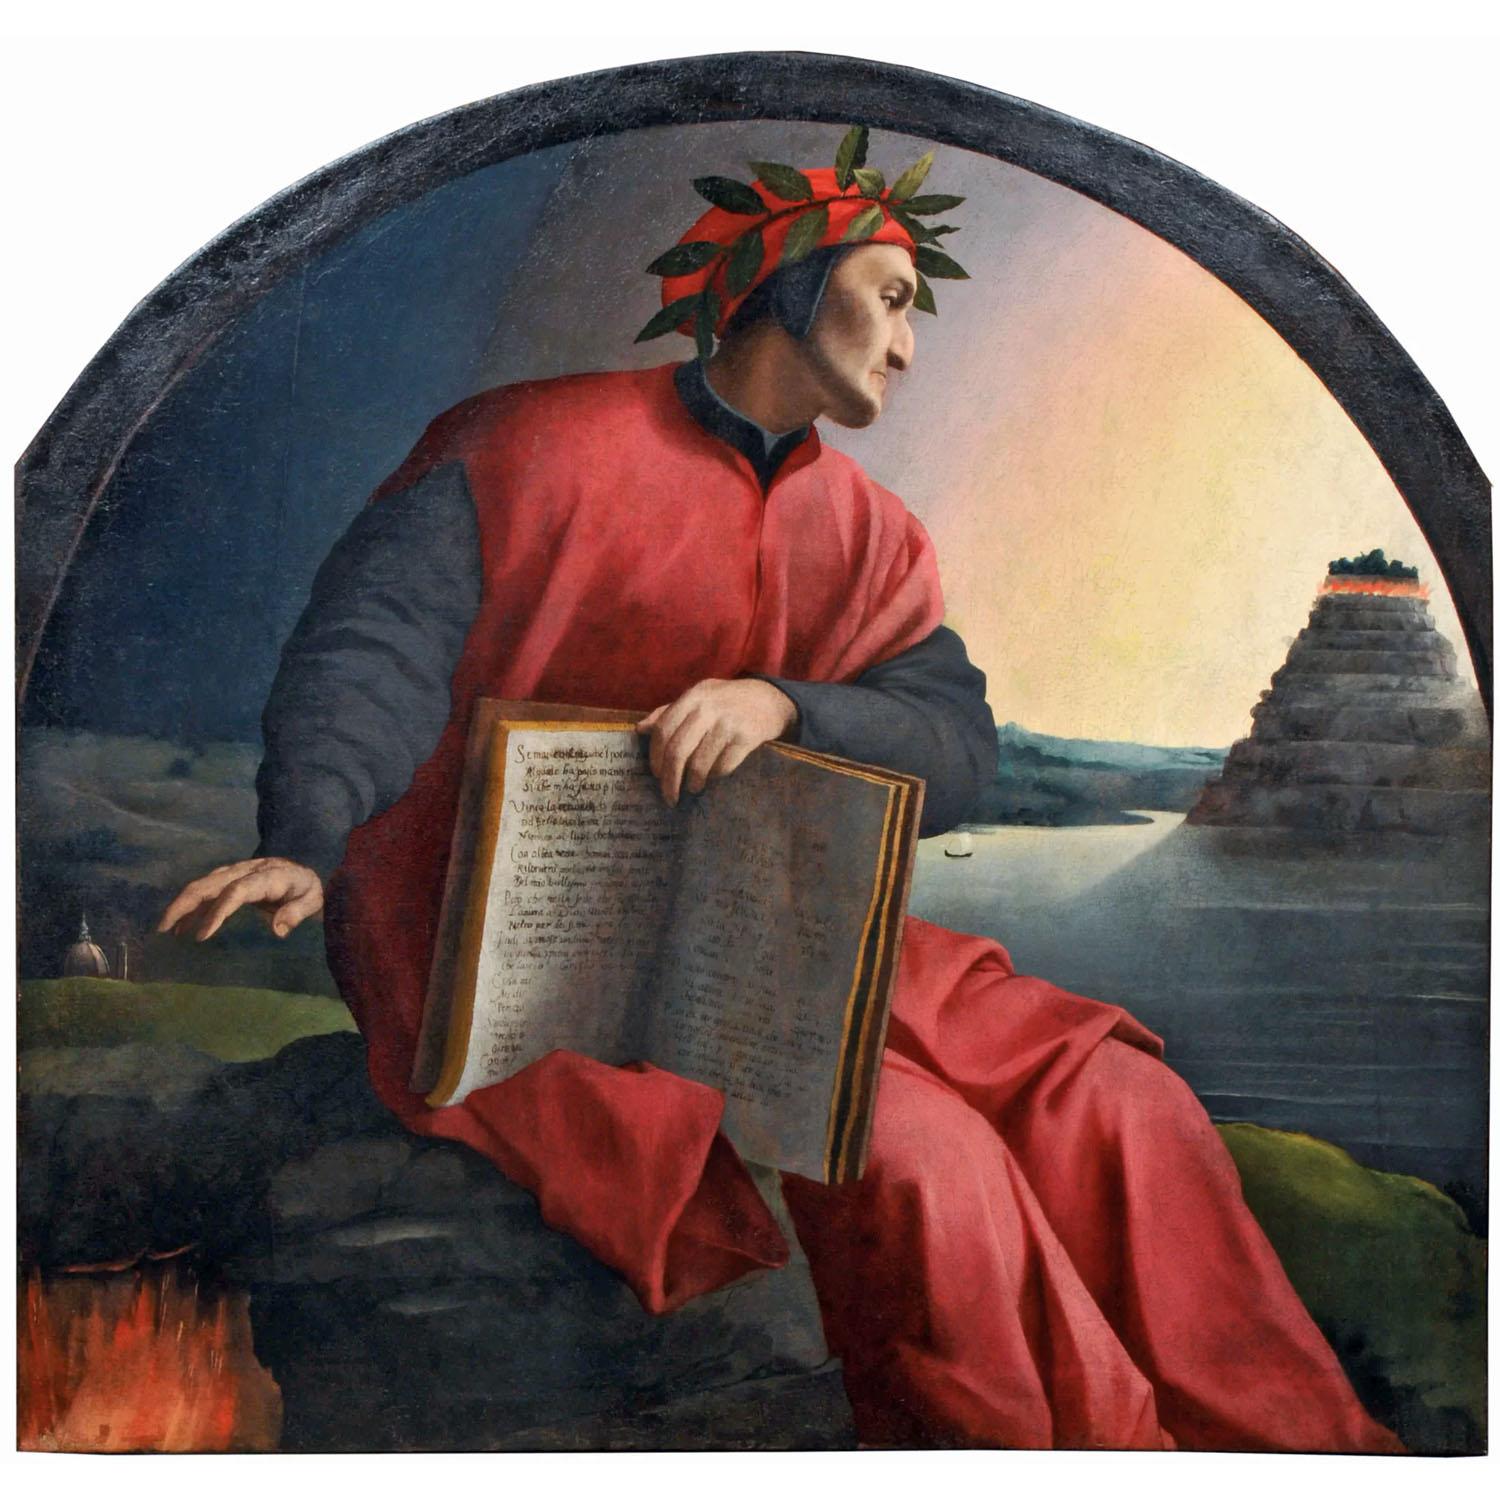 Agnolo Bronzino. Ritratto allegorico di Dante. 1530. Private collection, displayed in Uffizi